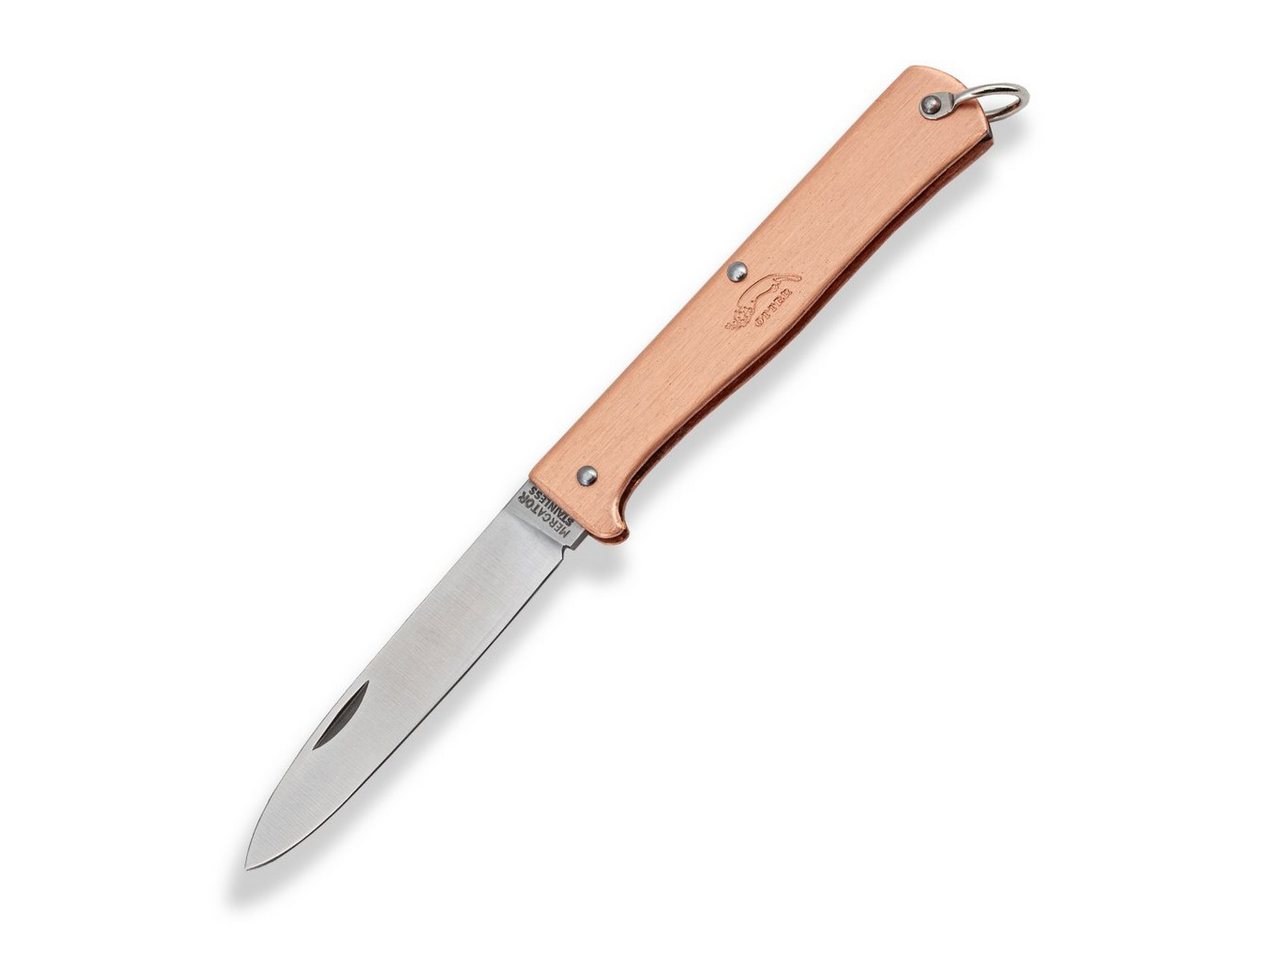 Otter Messer Taschenmesser Mercator-Messer klein Kupfer, Klinge rostfrei, Slipjoint von Otter Messer